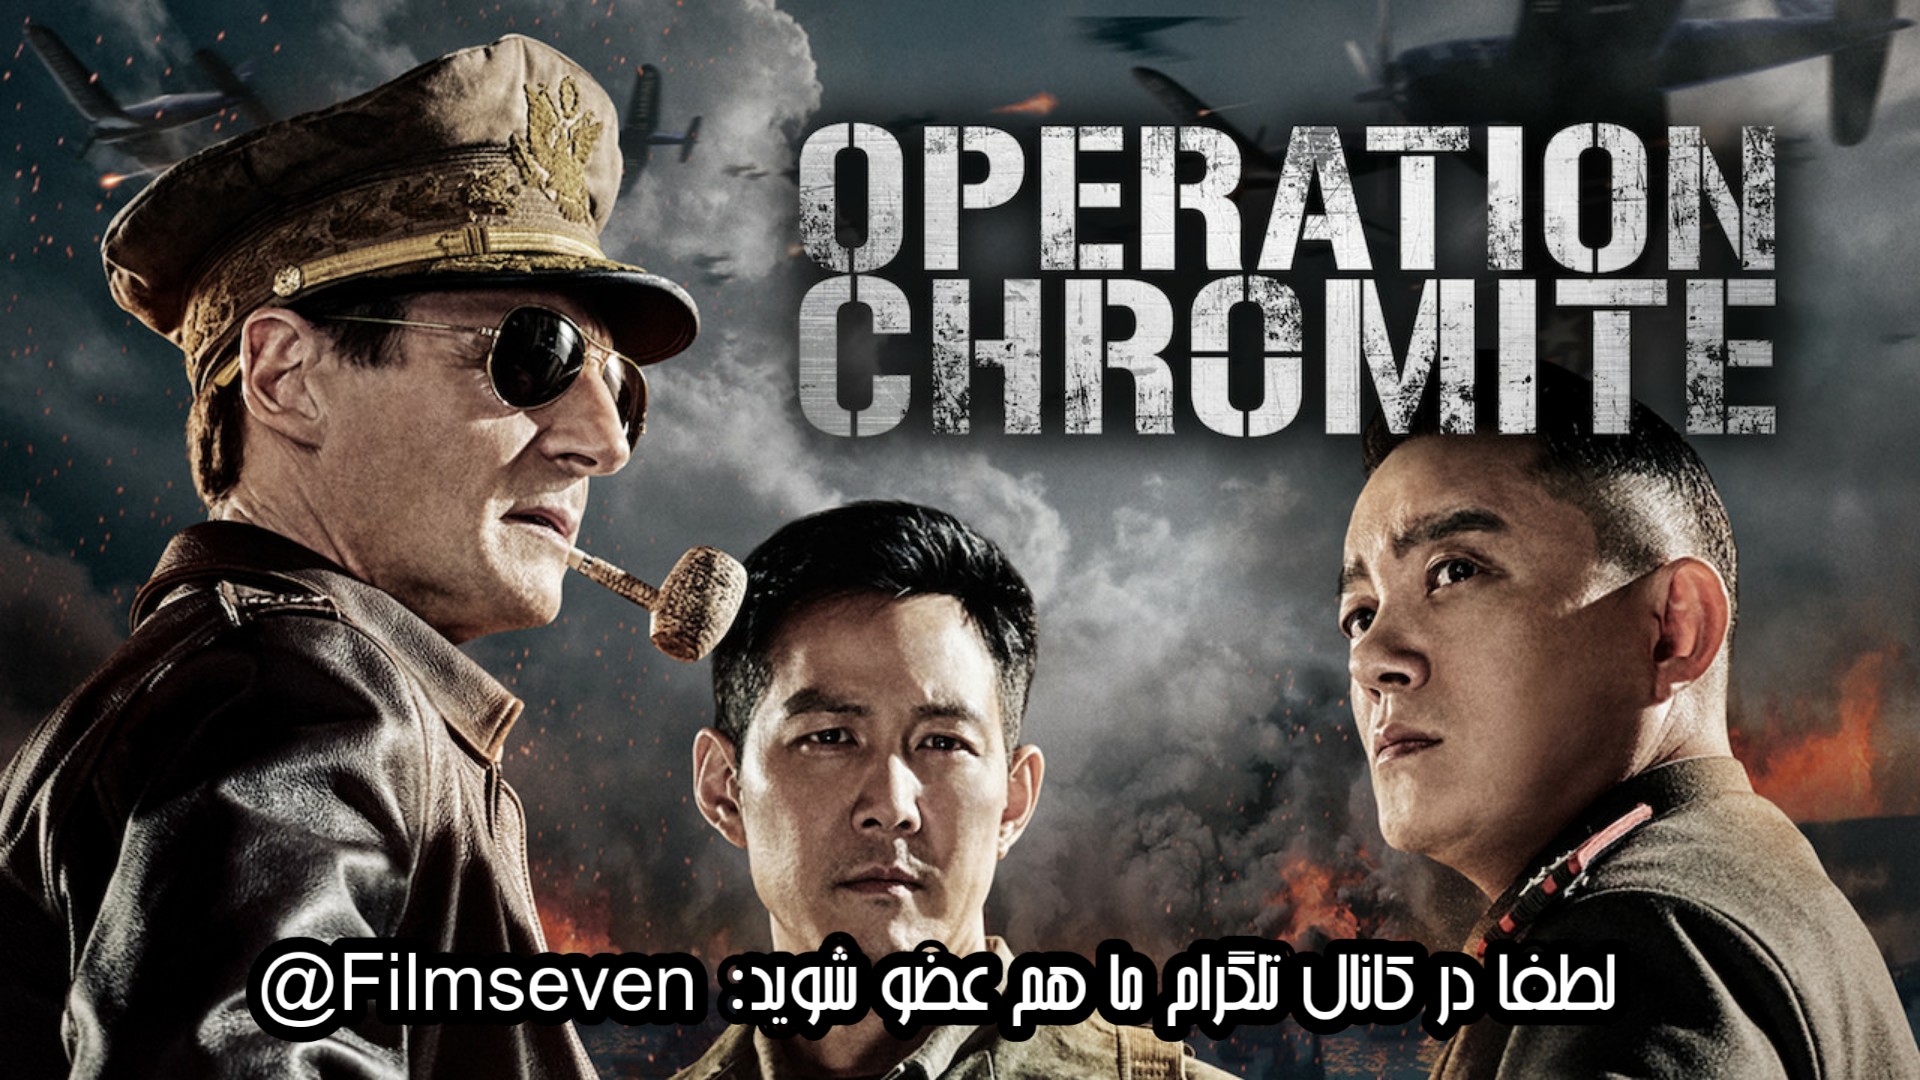 فیلم Operation Chromite 2016 - عملیات کرومایت با دوبله فارسی